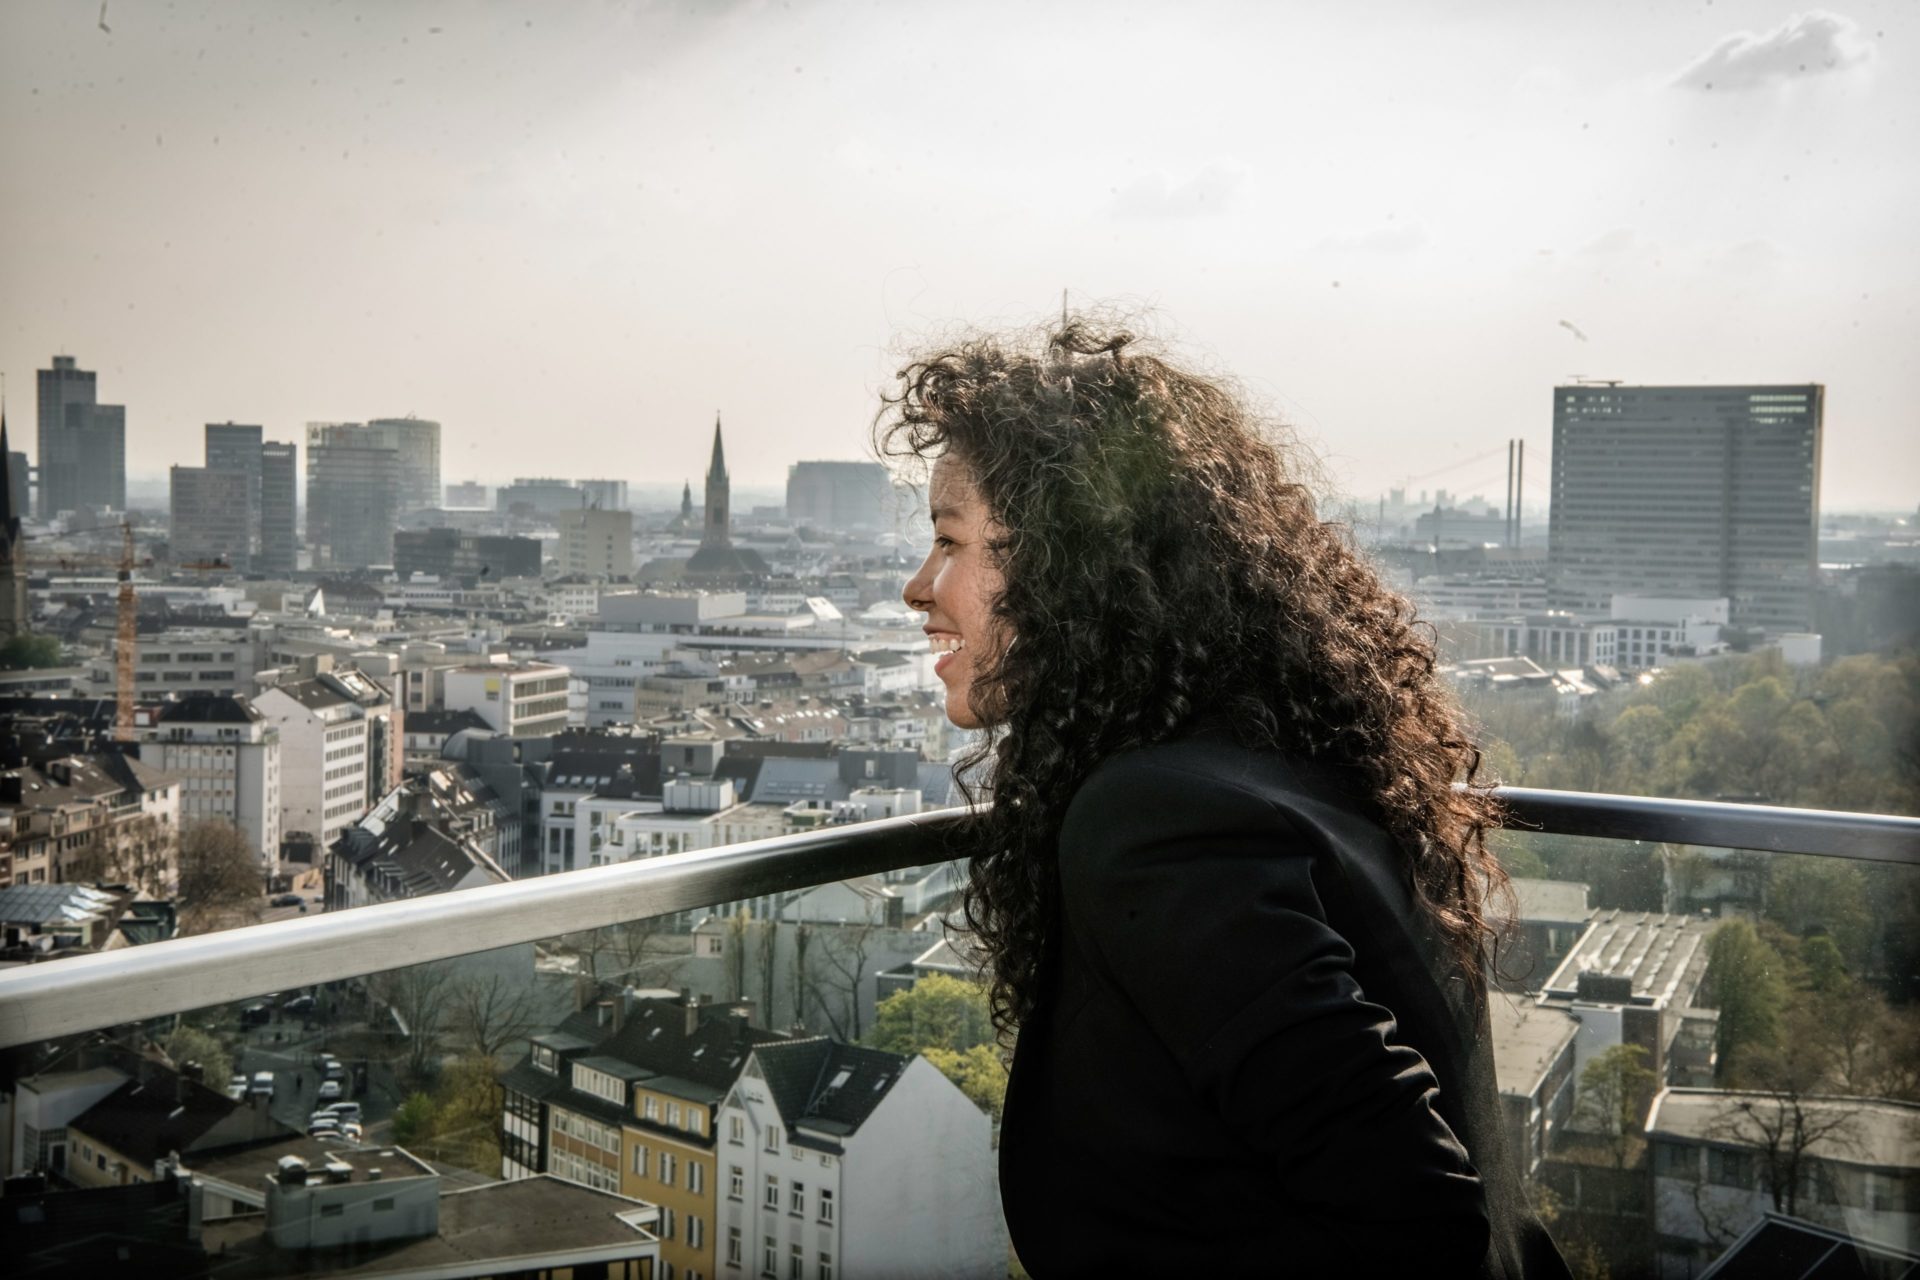 Unsere Kolumnistin Karina Rodriguez auf der Dachterrasse eines Hauses an der Toulouse Allee, wo Andreas Endermann sie fotografiert hat.